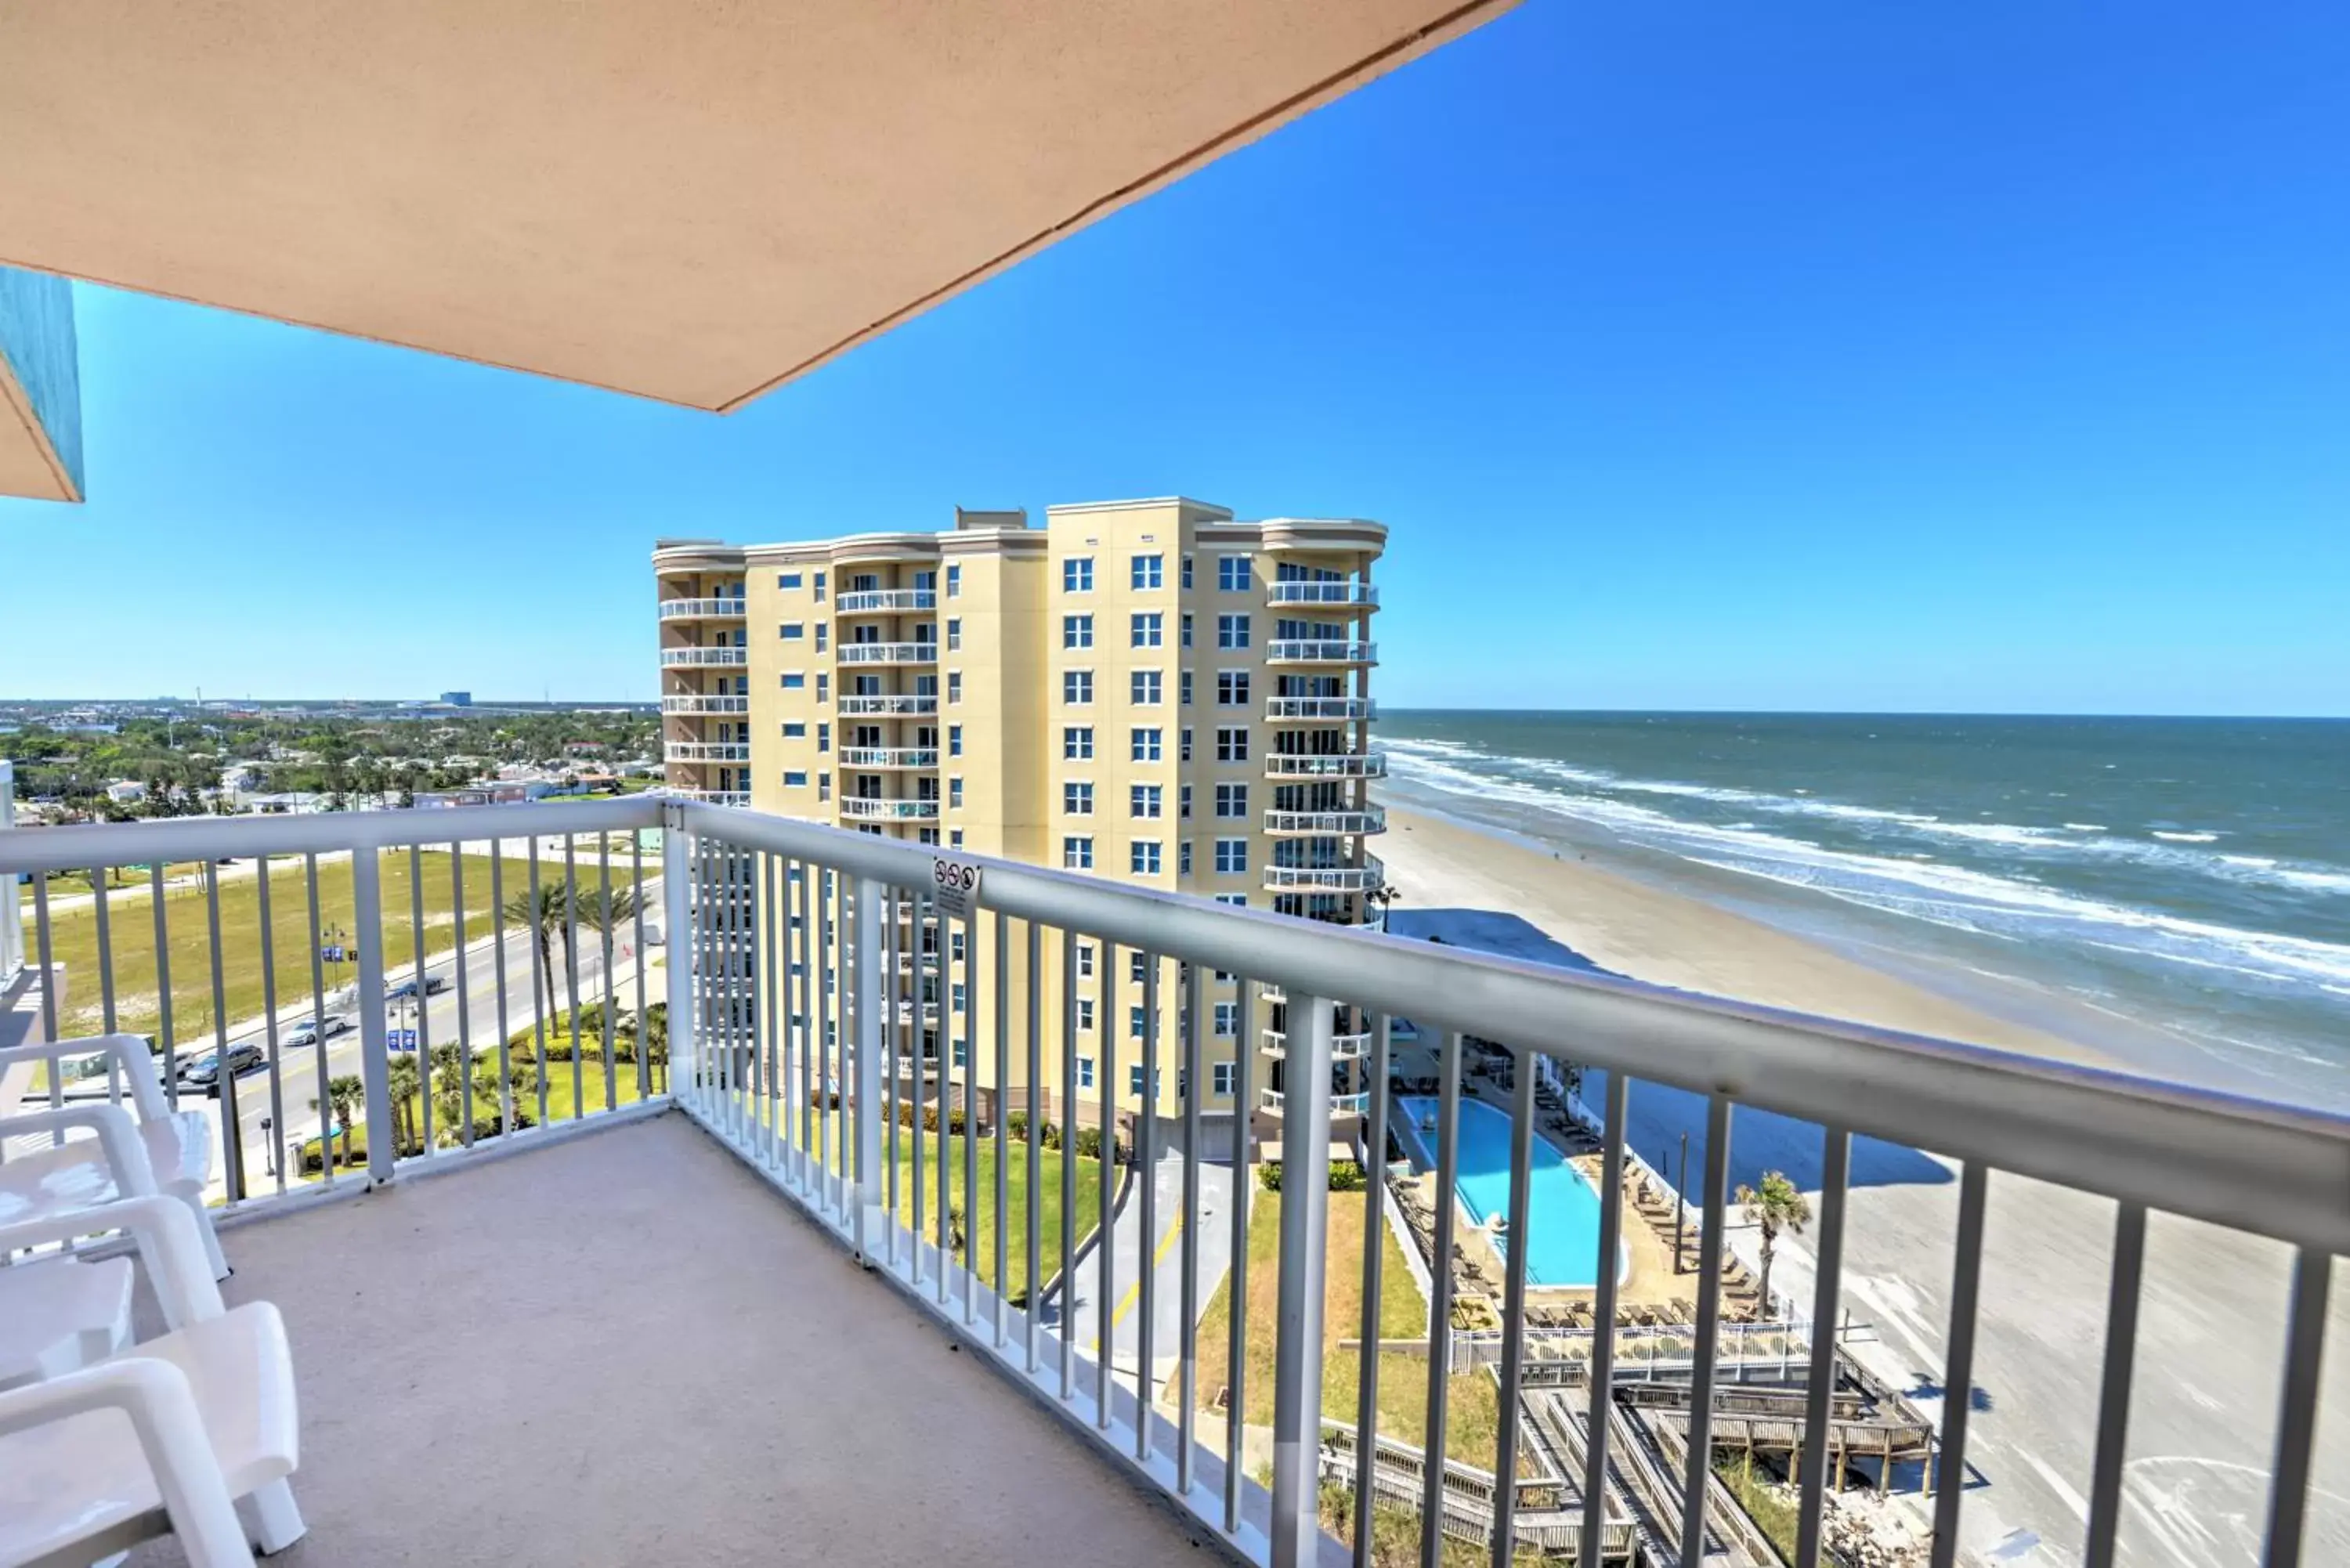 Balcony/Terrace in Bahama House - Daytona Beach Shores